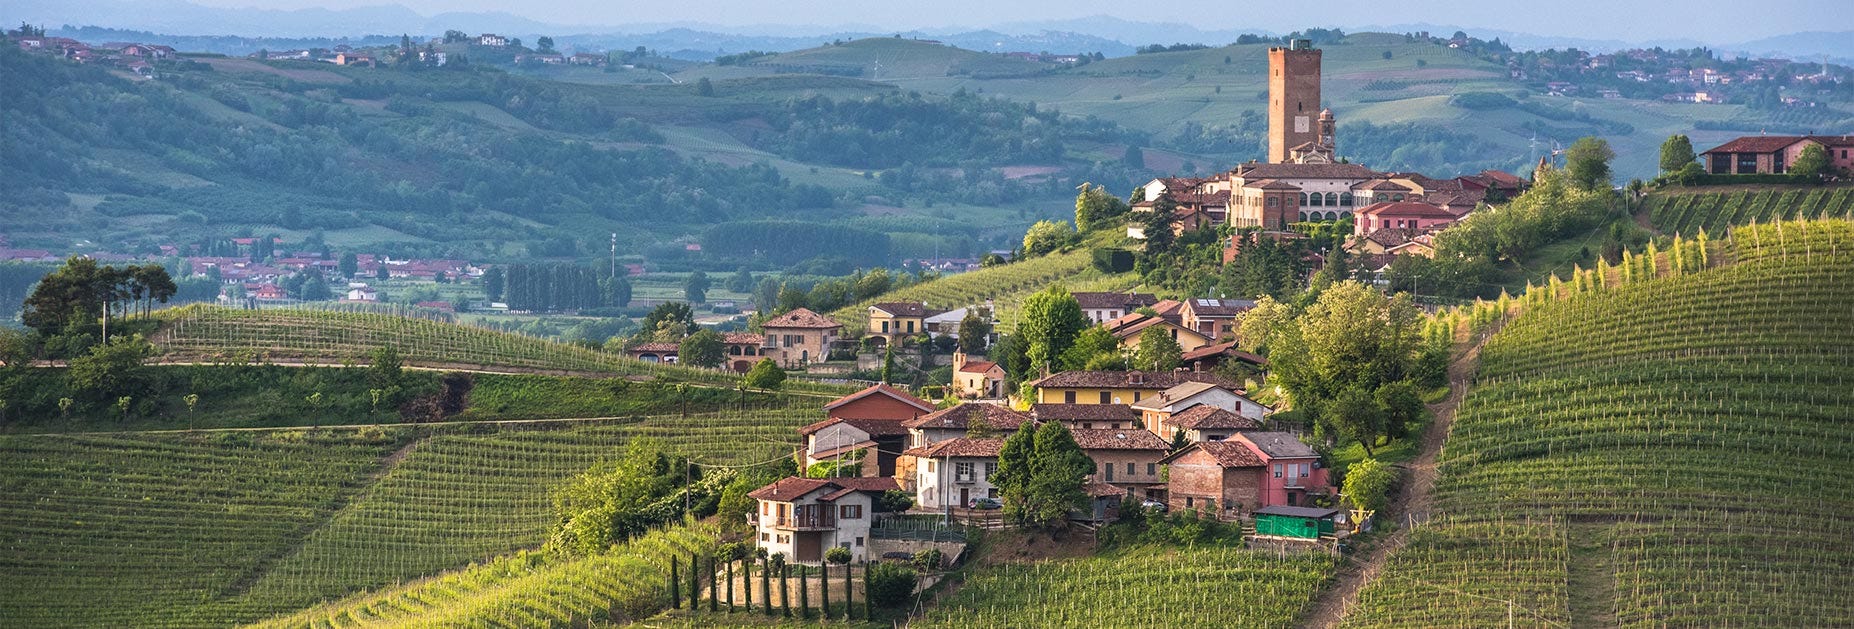 Blick auf des schöne Städtchen Barbaresco inmitten der hügeligen Piemonteser Landschaft